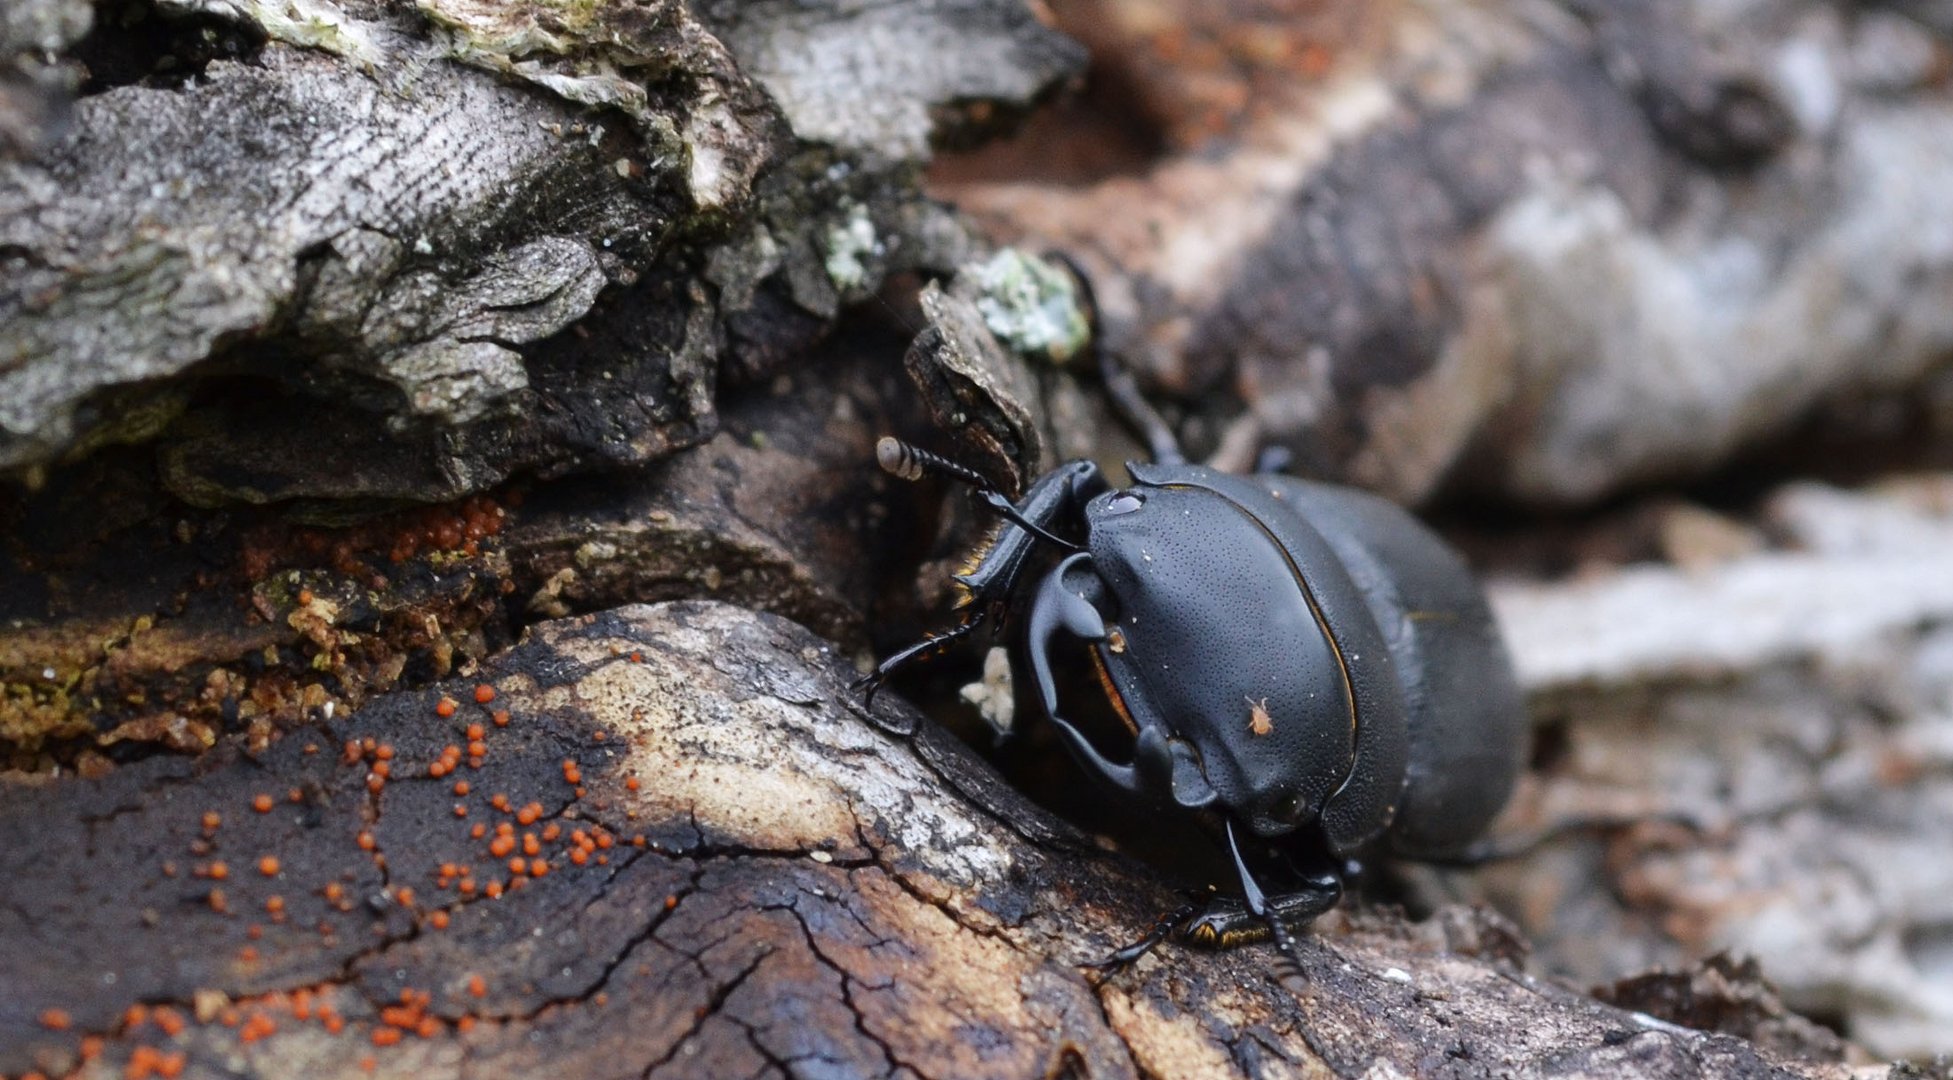 Ein Käfer mit seinem kleinen Begleiter auf dem Kopf